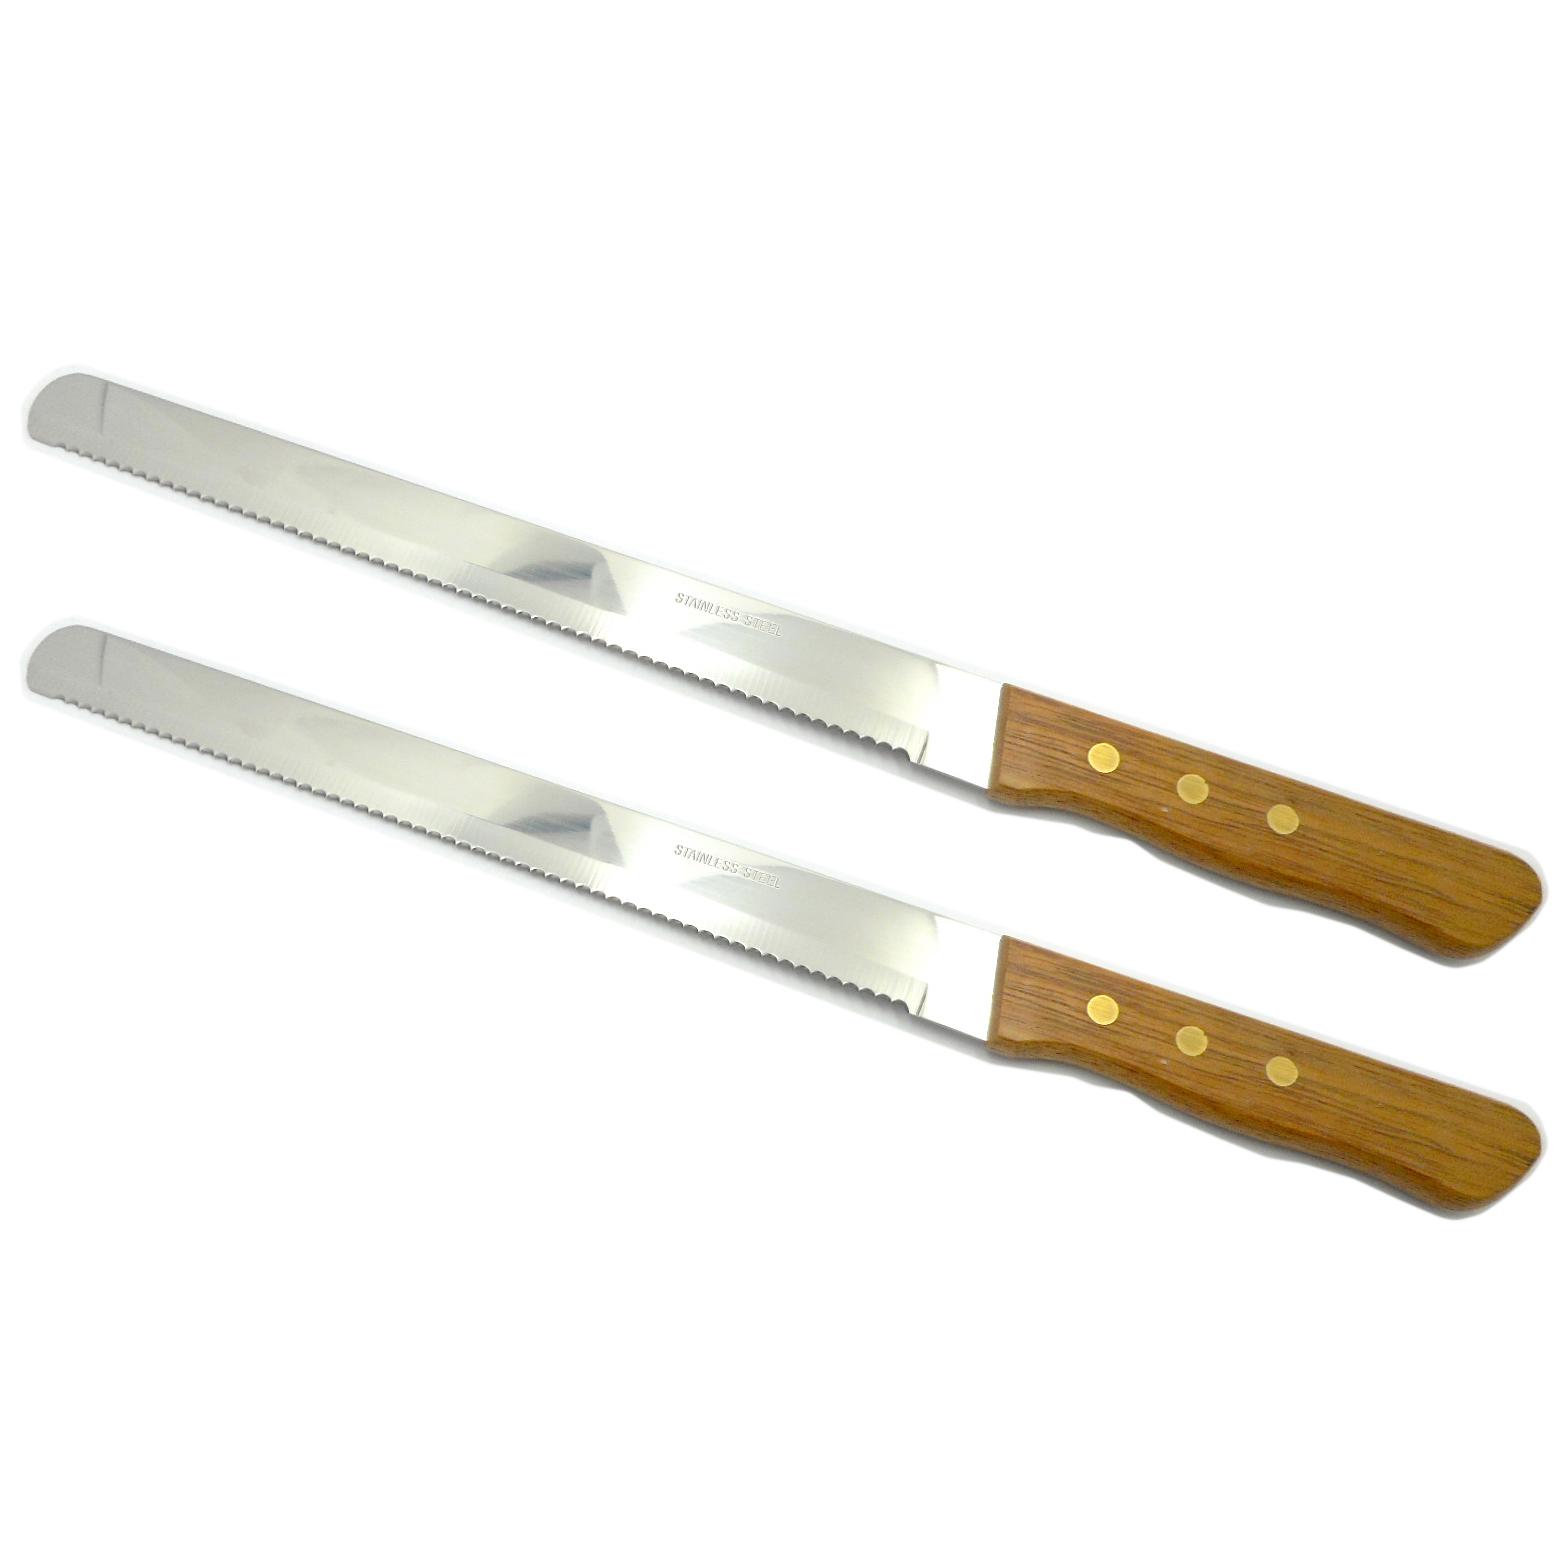 Urairak Stainless Steel มีดสำหรับตัดเค้ก และขนมปัง ใบมีด 9 นิ้ว 2 ชิ้น